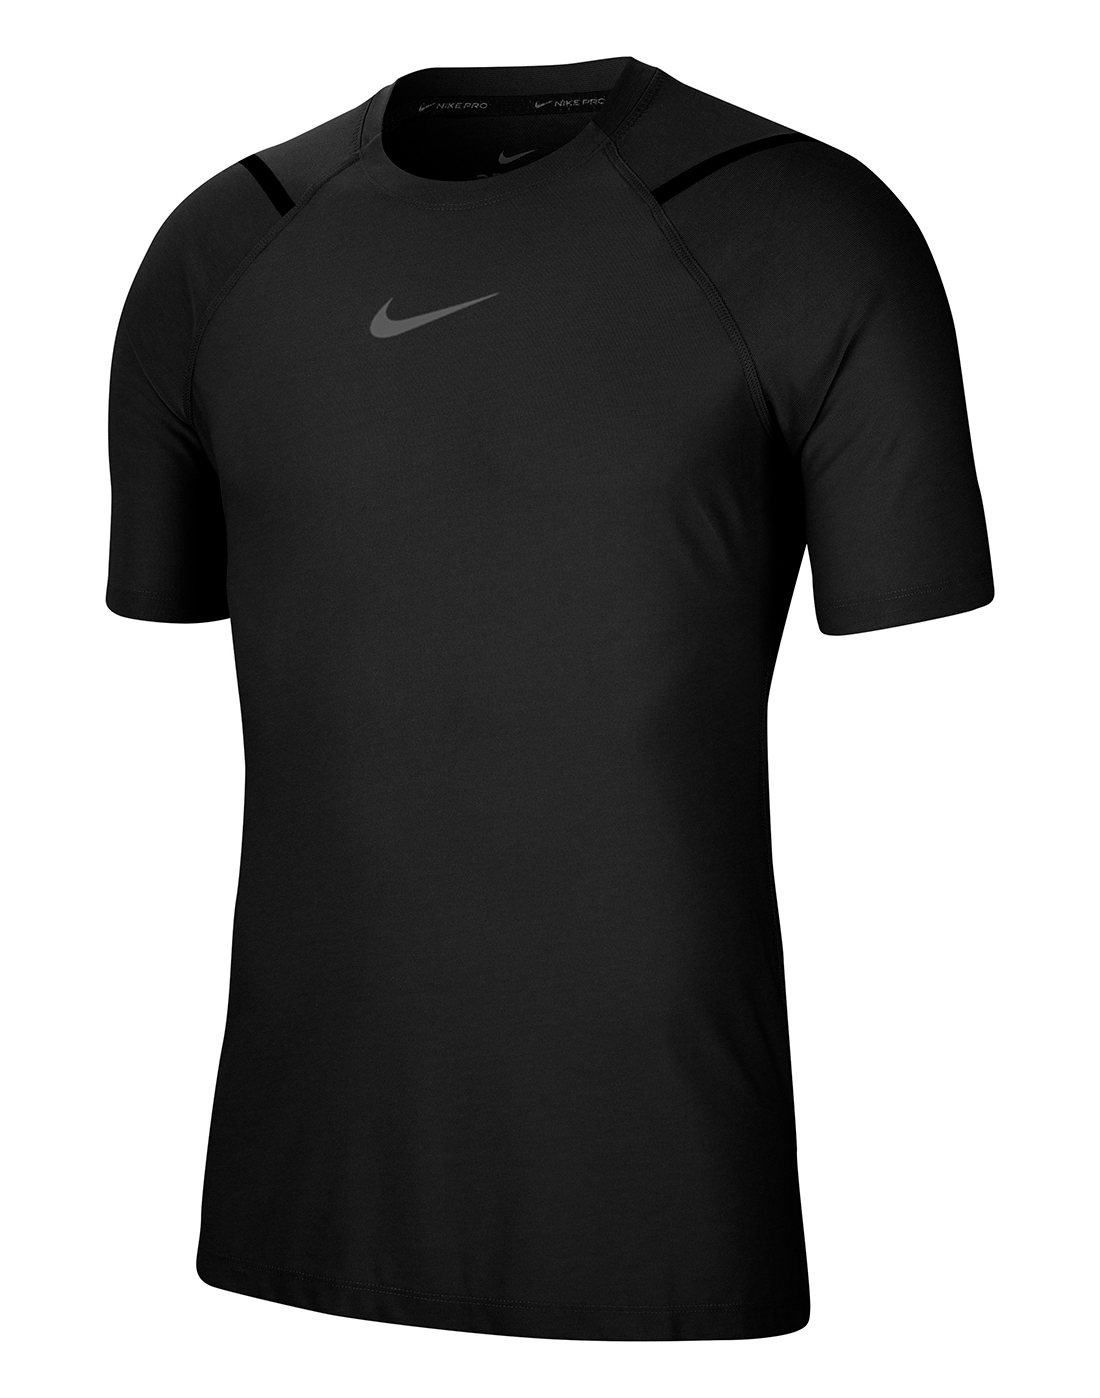 Nike Mens Pro Training T-Shirt - Black | Life Style Sports EU